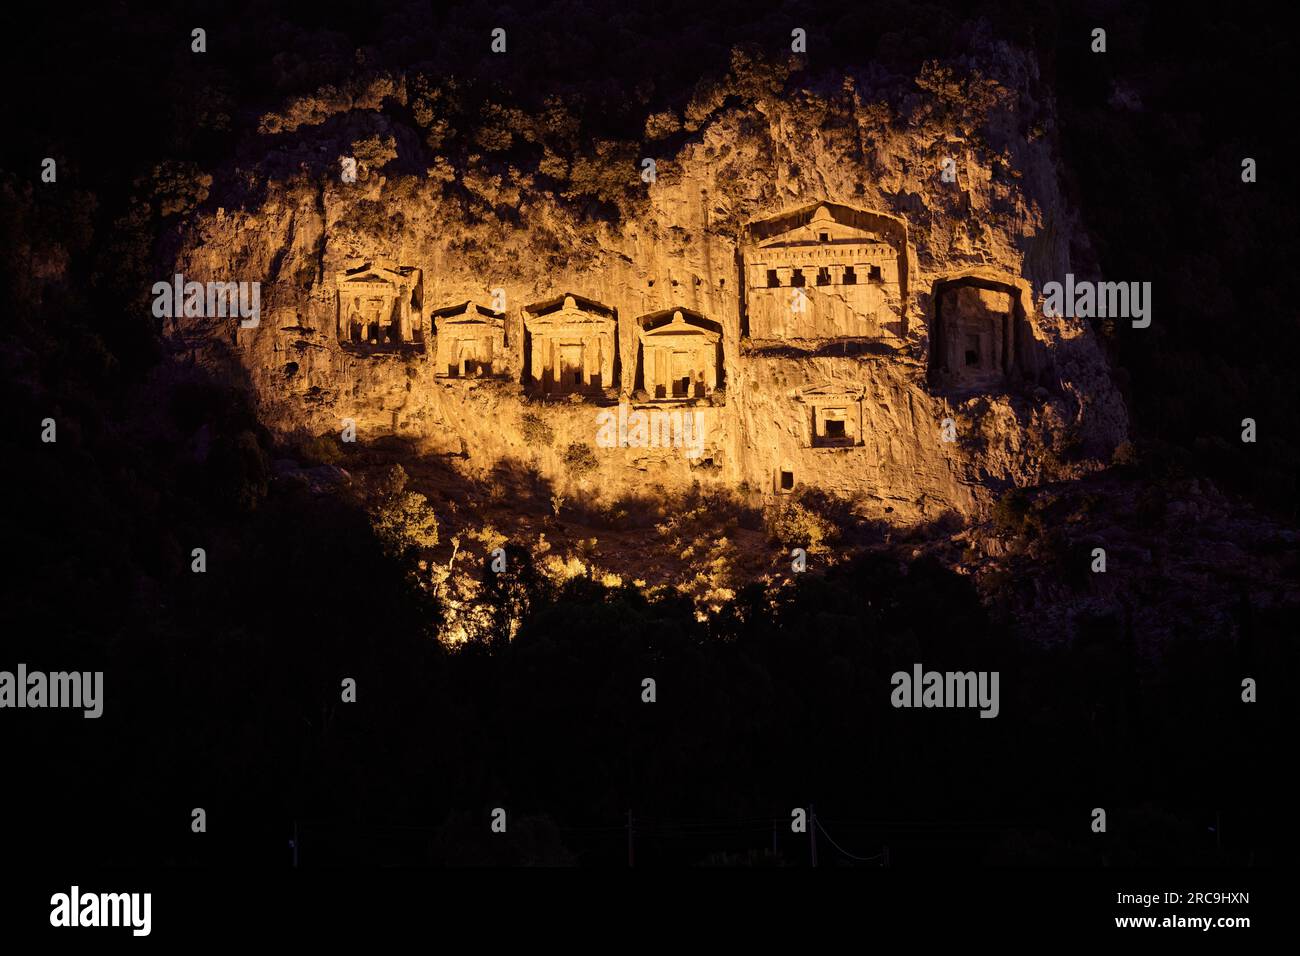 Nachtaufnahme der beleuchteten Lykische Felsengraeber in einer Felswand von Dalyan, Tuerkei |scatto notturno di tombe di roccia Licia illuminate in una roccia Foto Stock